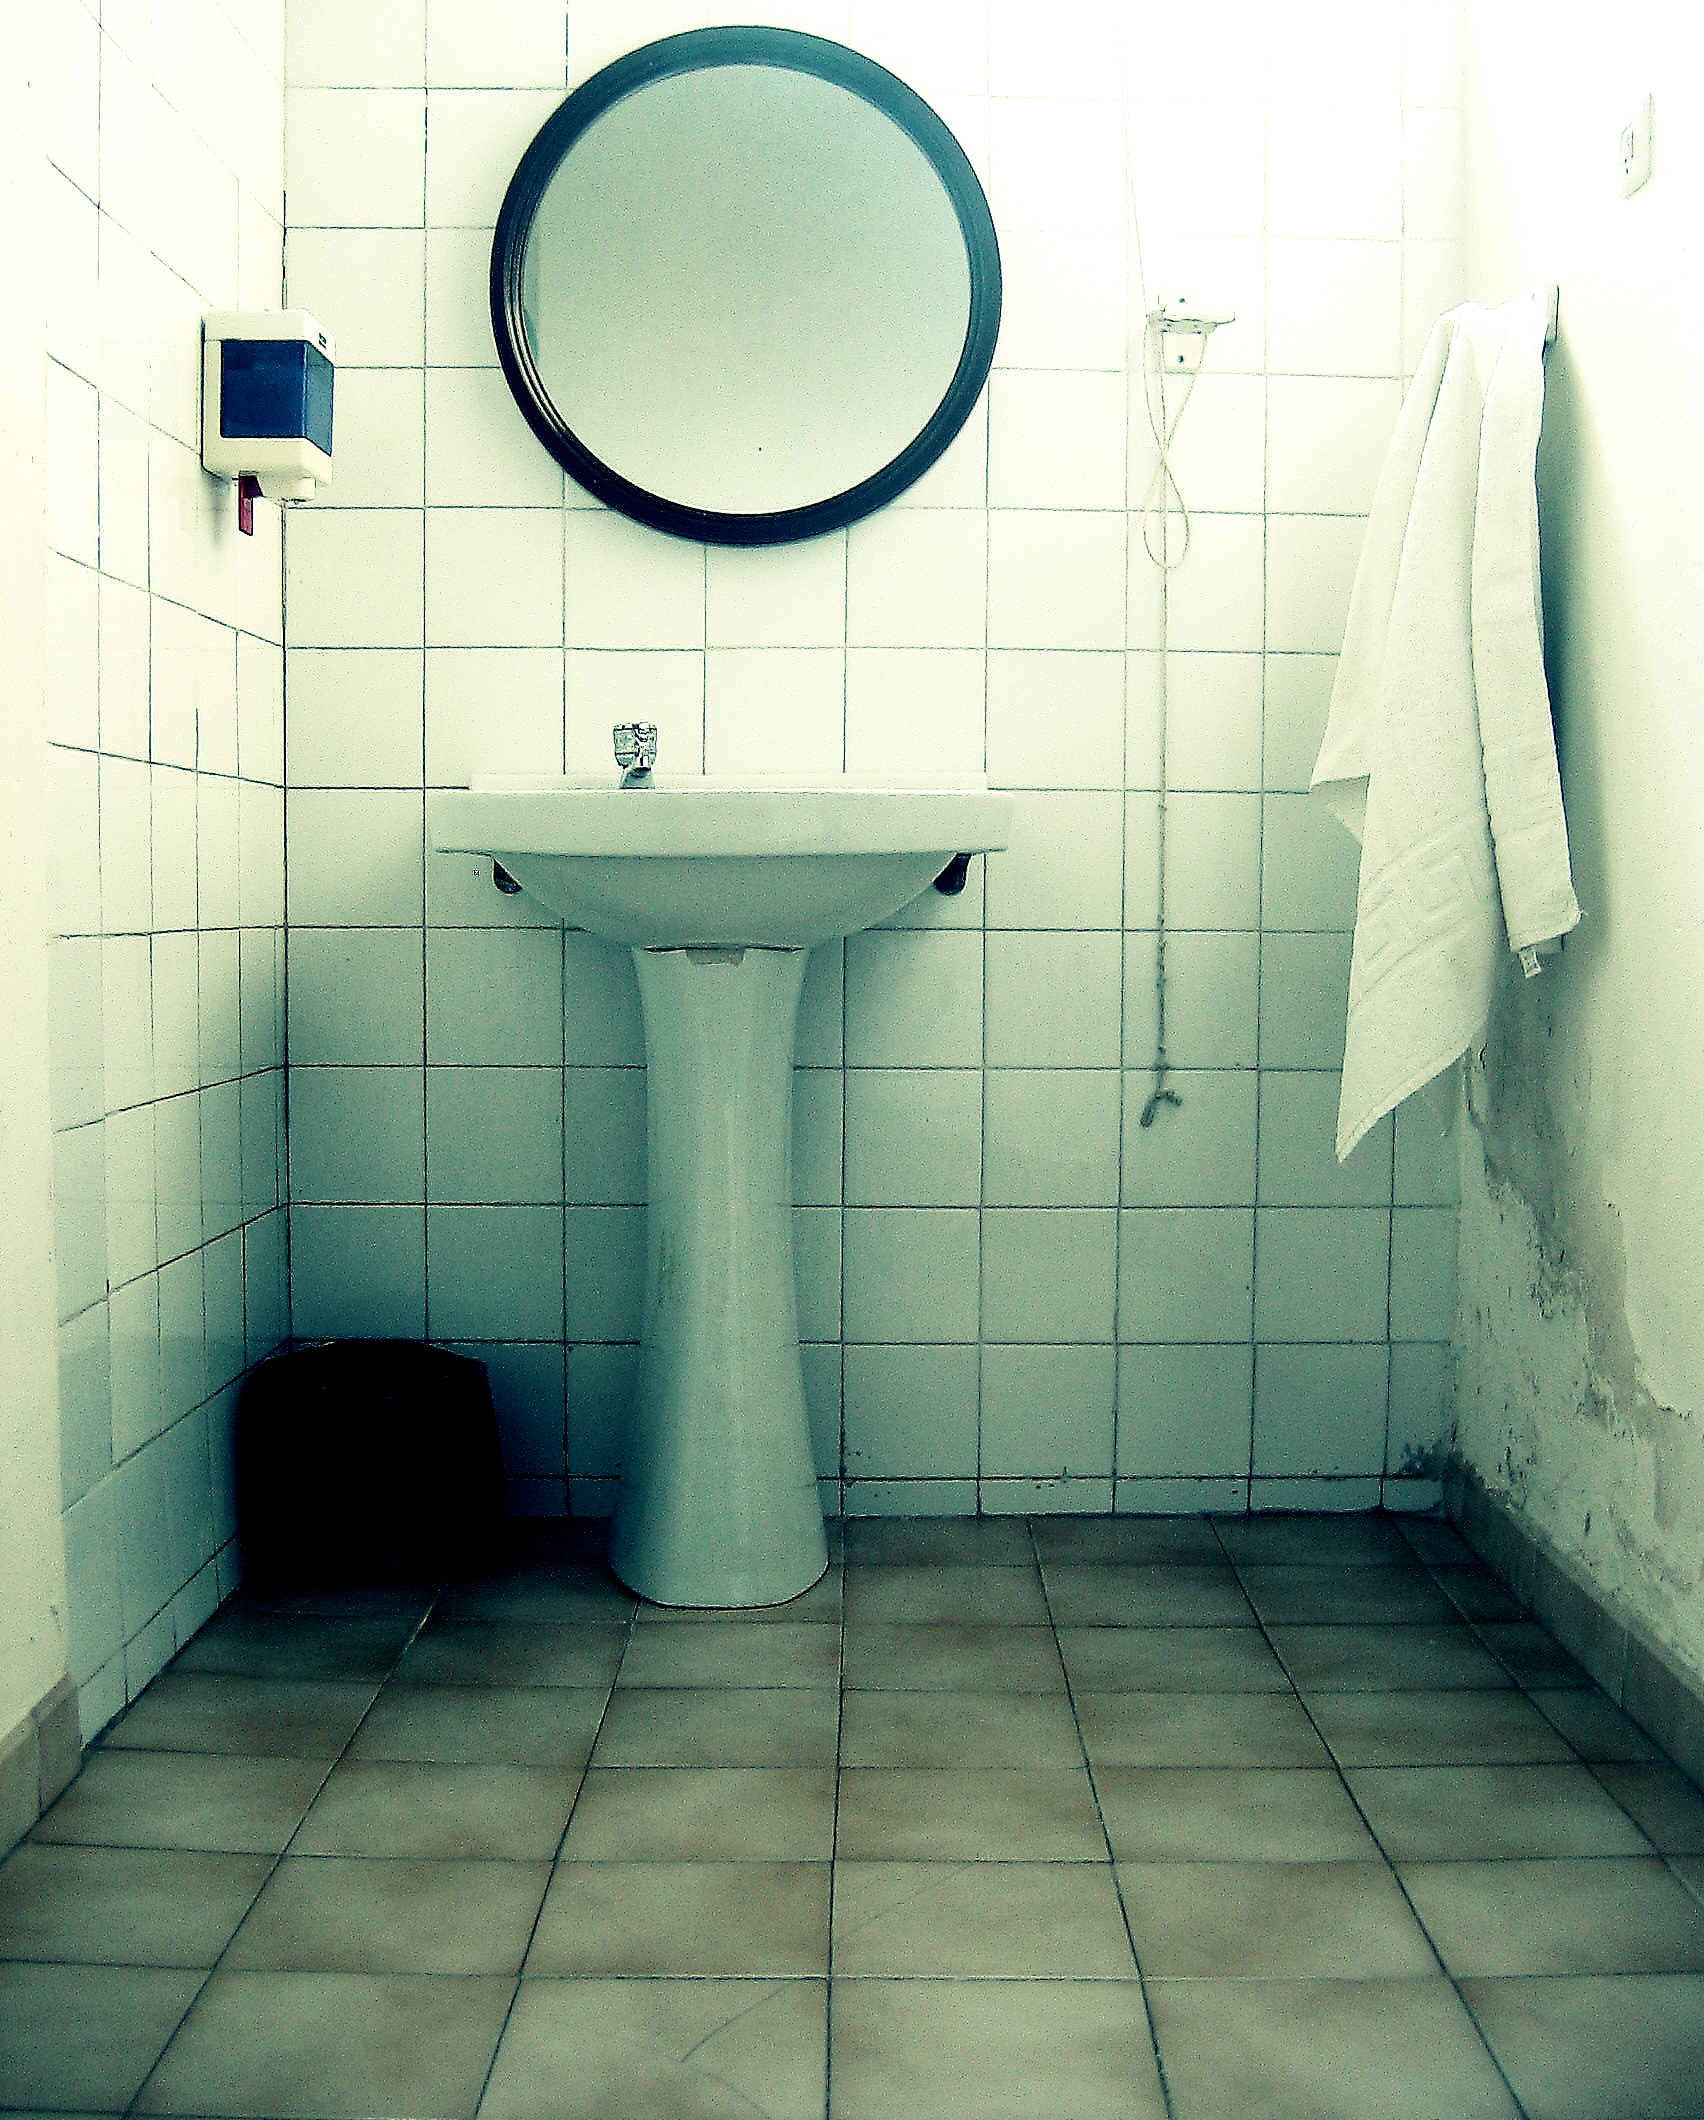 Un lavabo à colonne permet de dissimuler la tuyauterie sanitaire. © Antonio Martinez, CC BY-NC-SA 2.0, Flickr